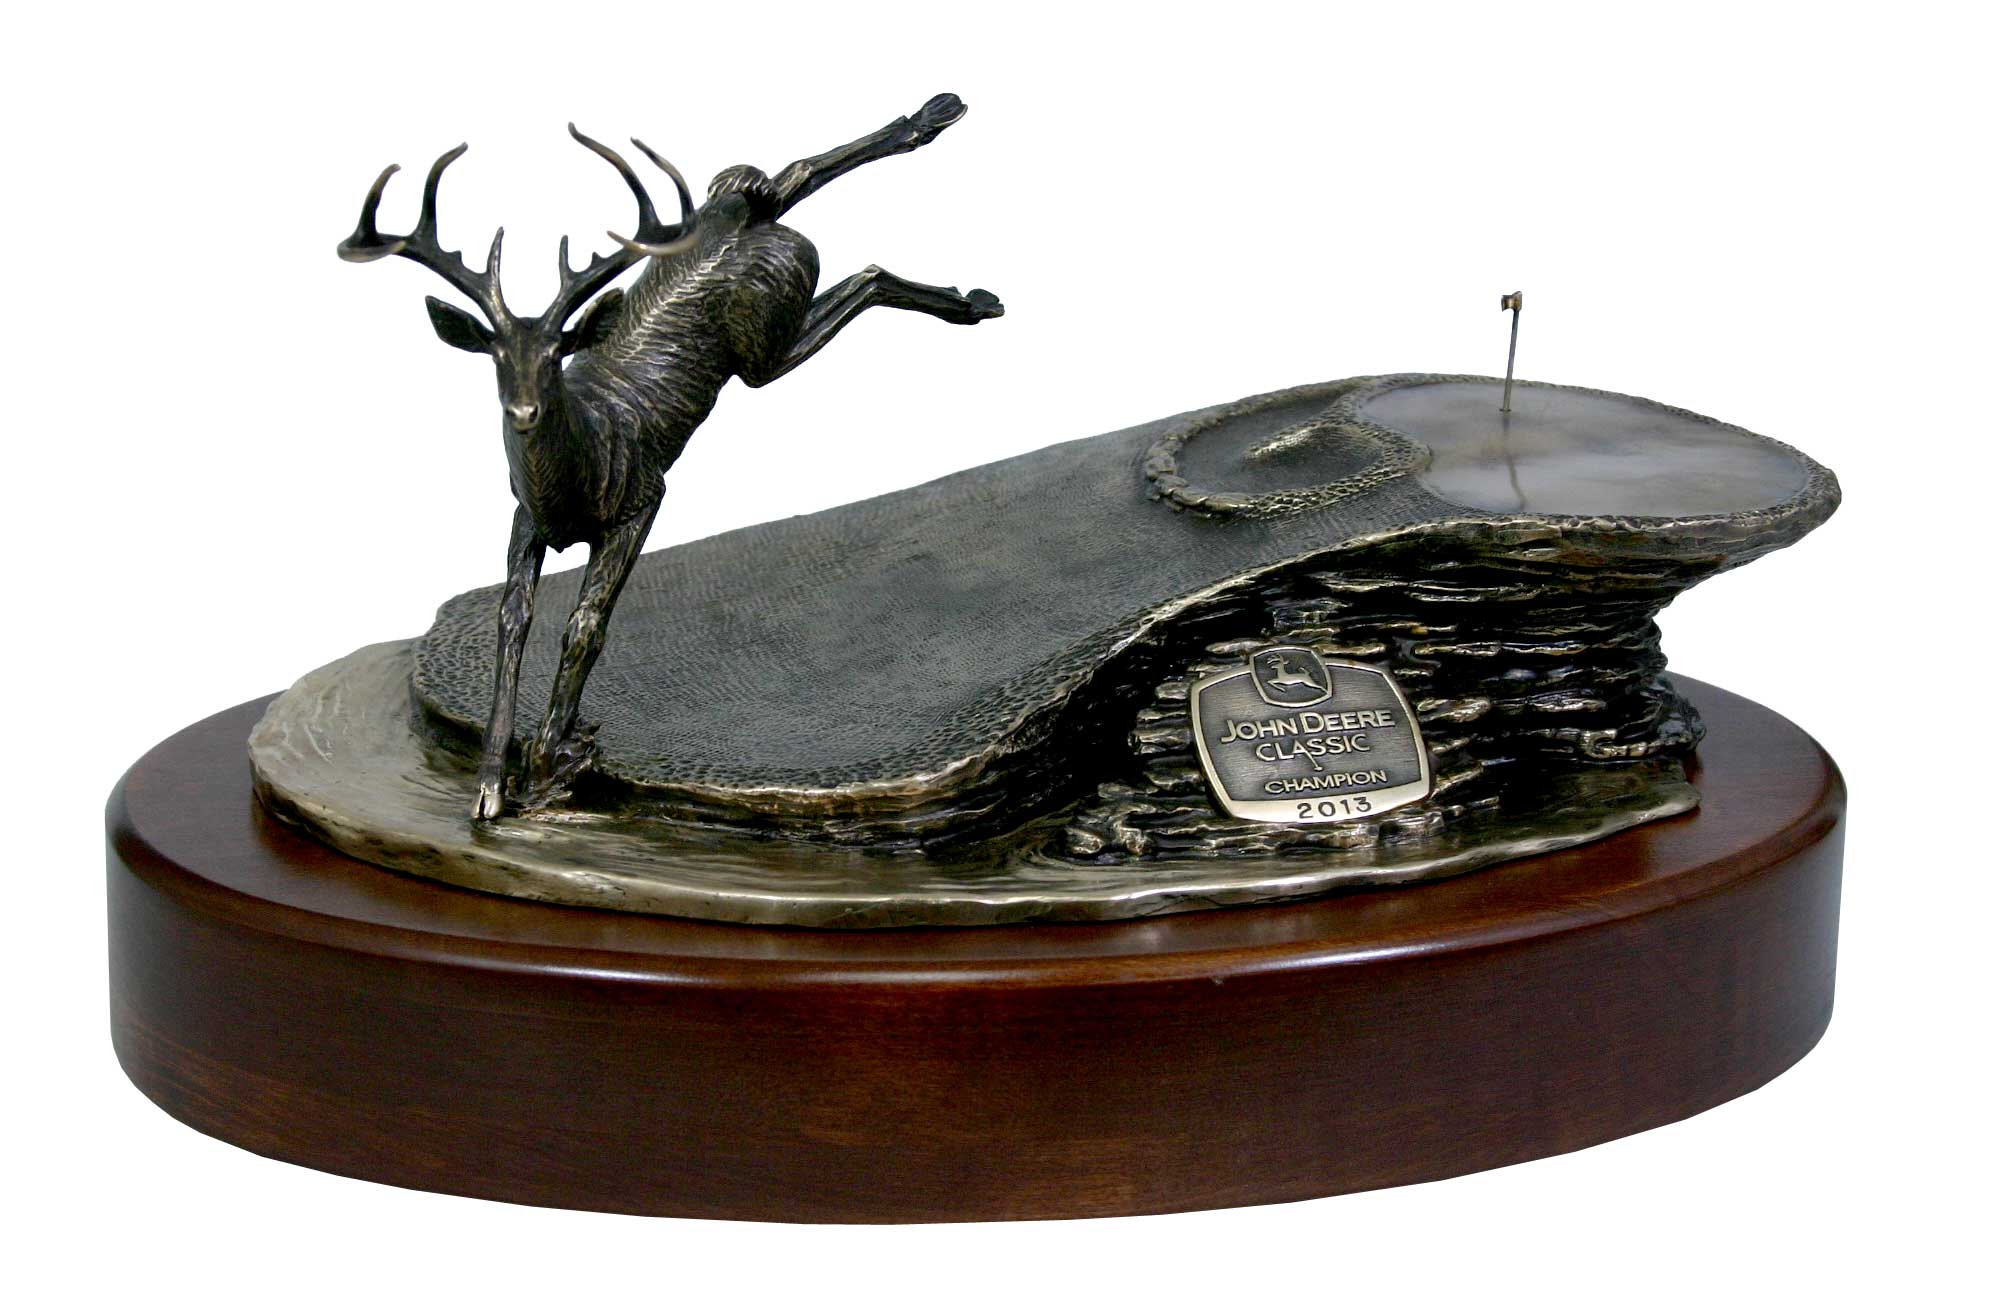 John Deere Classic trophy by Malcolm DeMille